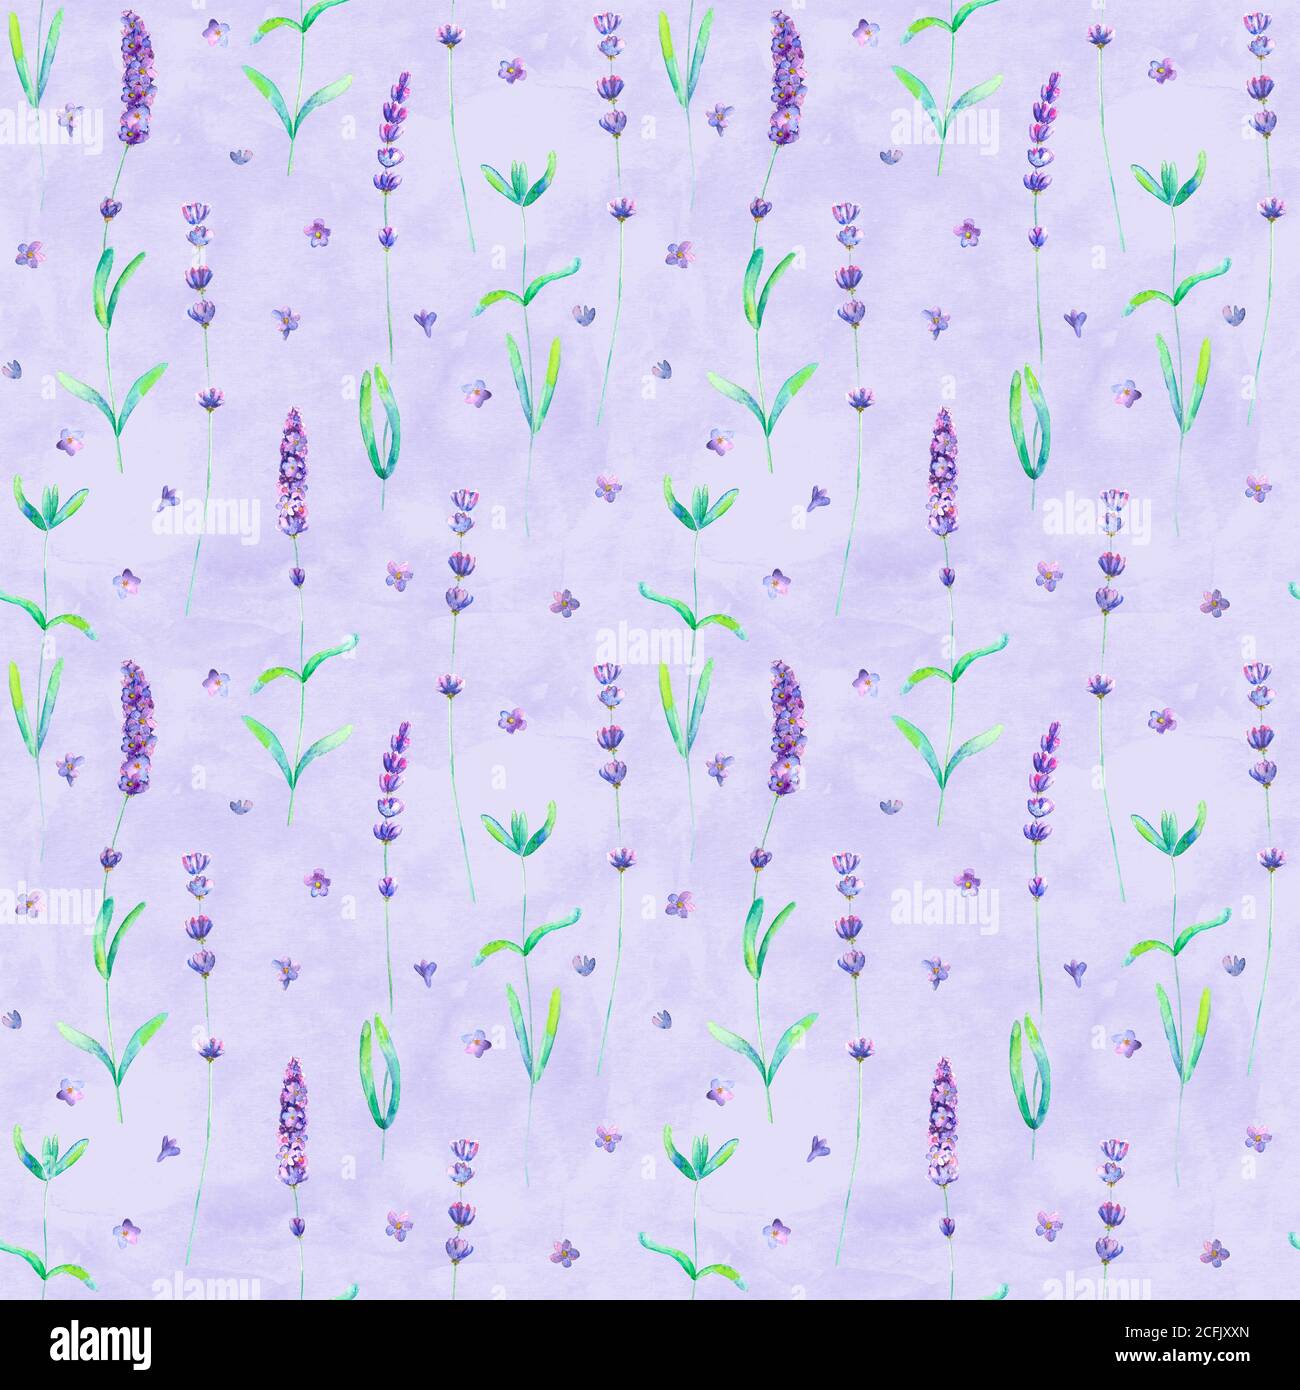 Lavendel Blumen Aquarell nahtlose Muster auf lila Hintergrund. Aquarell handgezeichnete botanische Textur Illustration. Print für Textil, Tapete Stockfoto